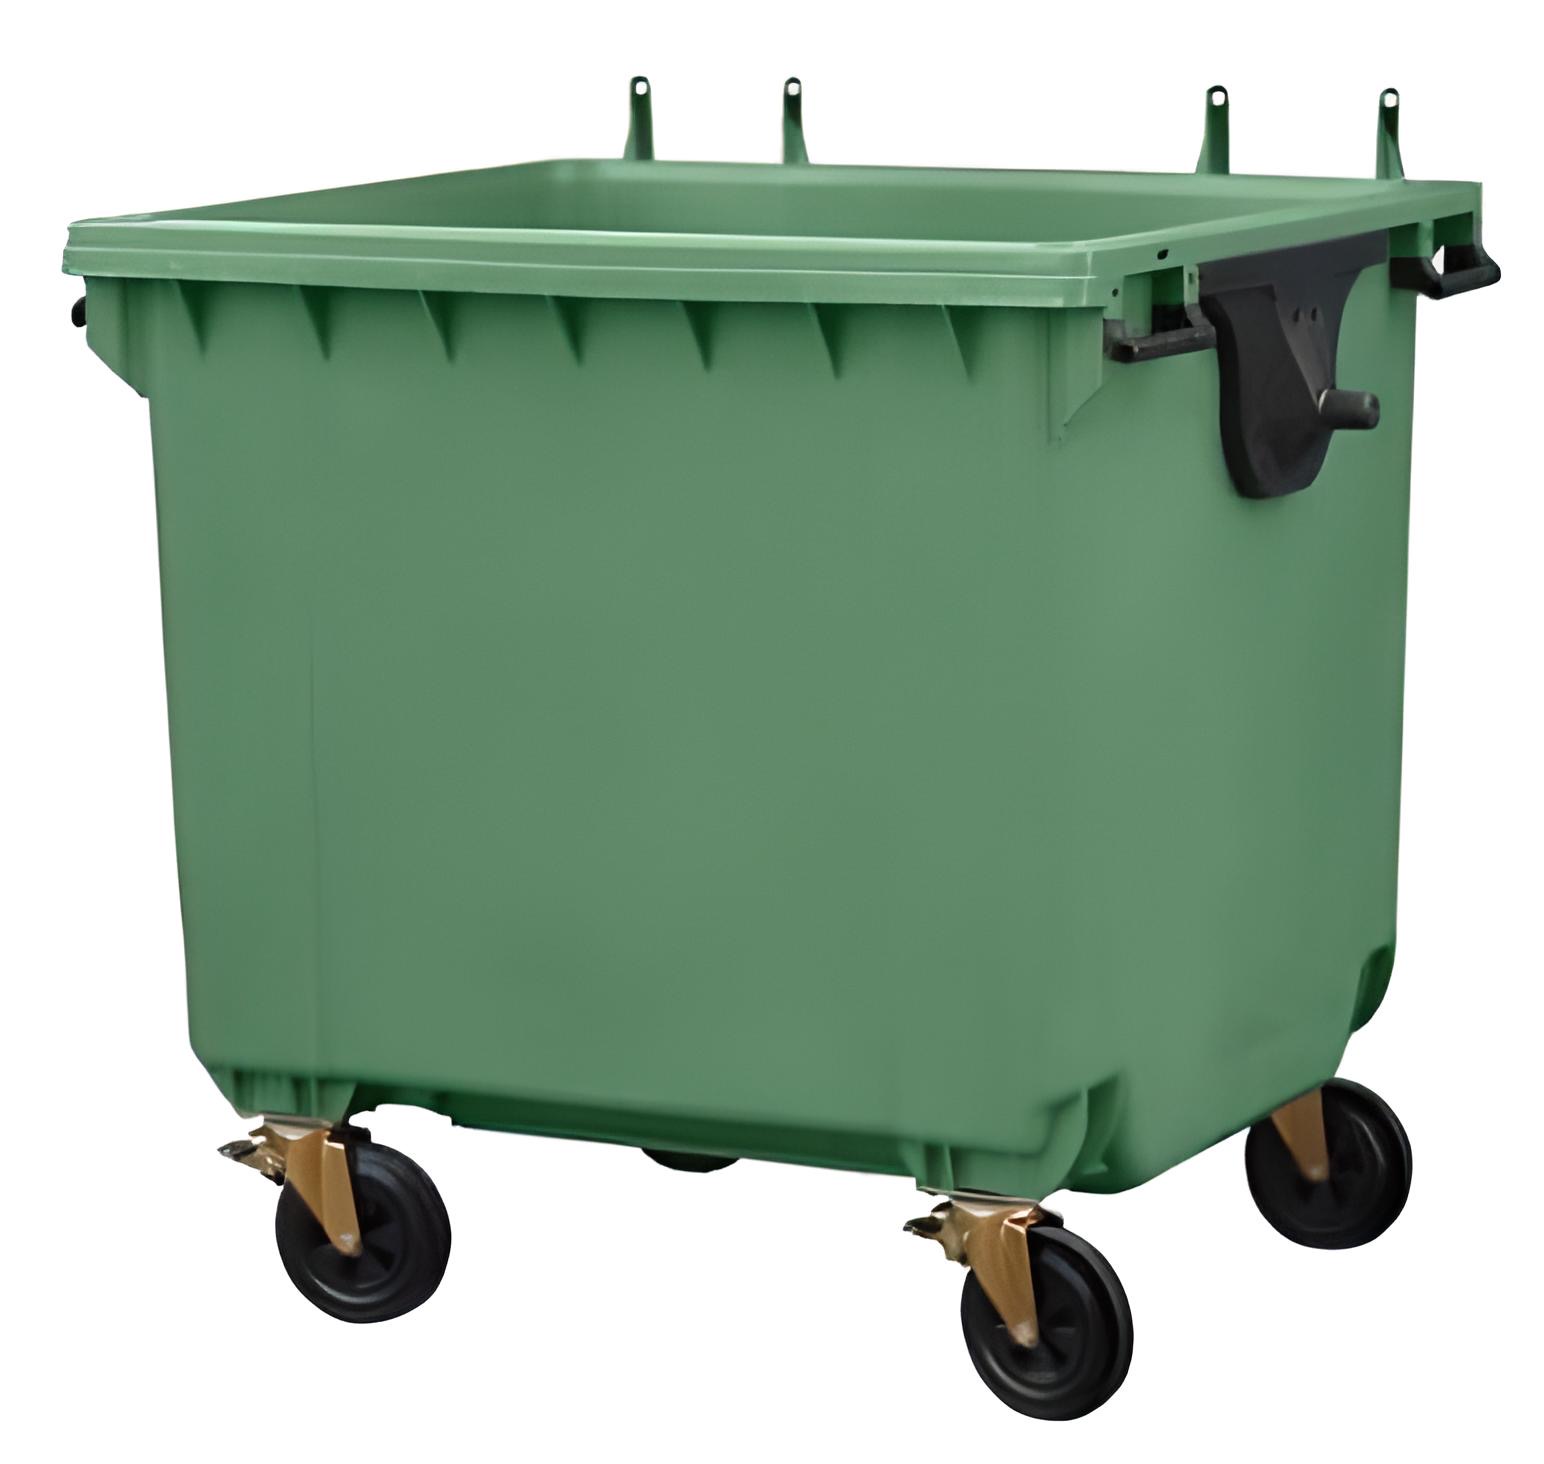 Крышка мусорного контейнера 1100. Контейнер ТКО 1100 Л зеленый. Пластиковый евроконтейнер ТБО 1100л. Контейнер мусорный на колесах МКТ-1100 (зеленый) 1100л.